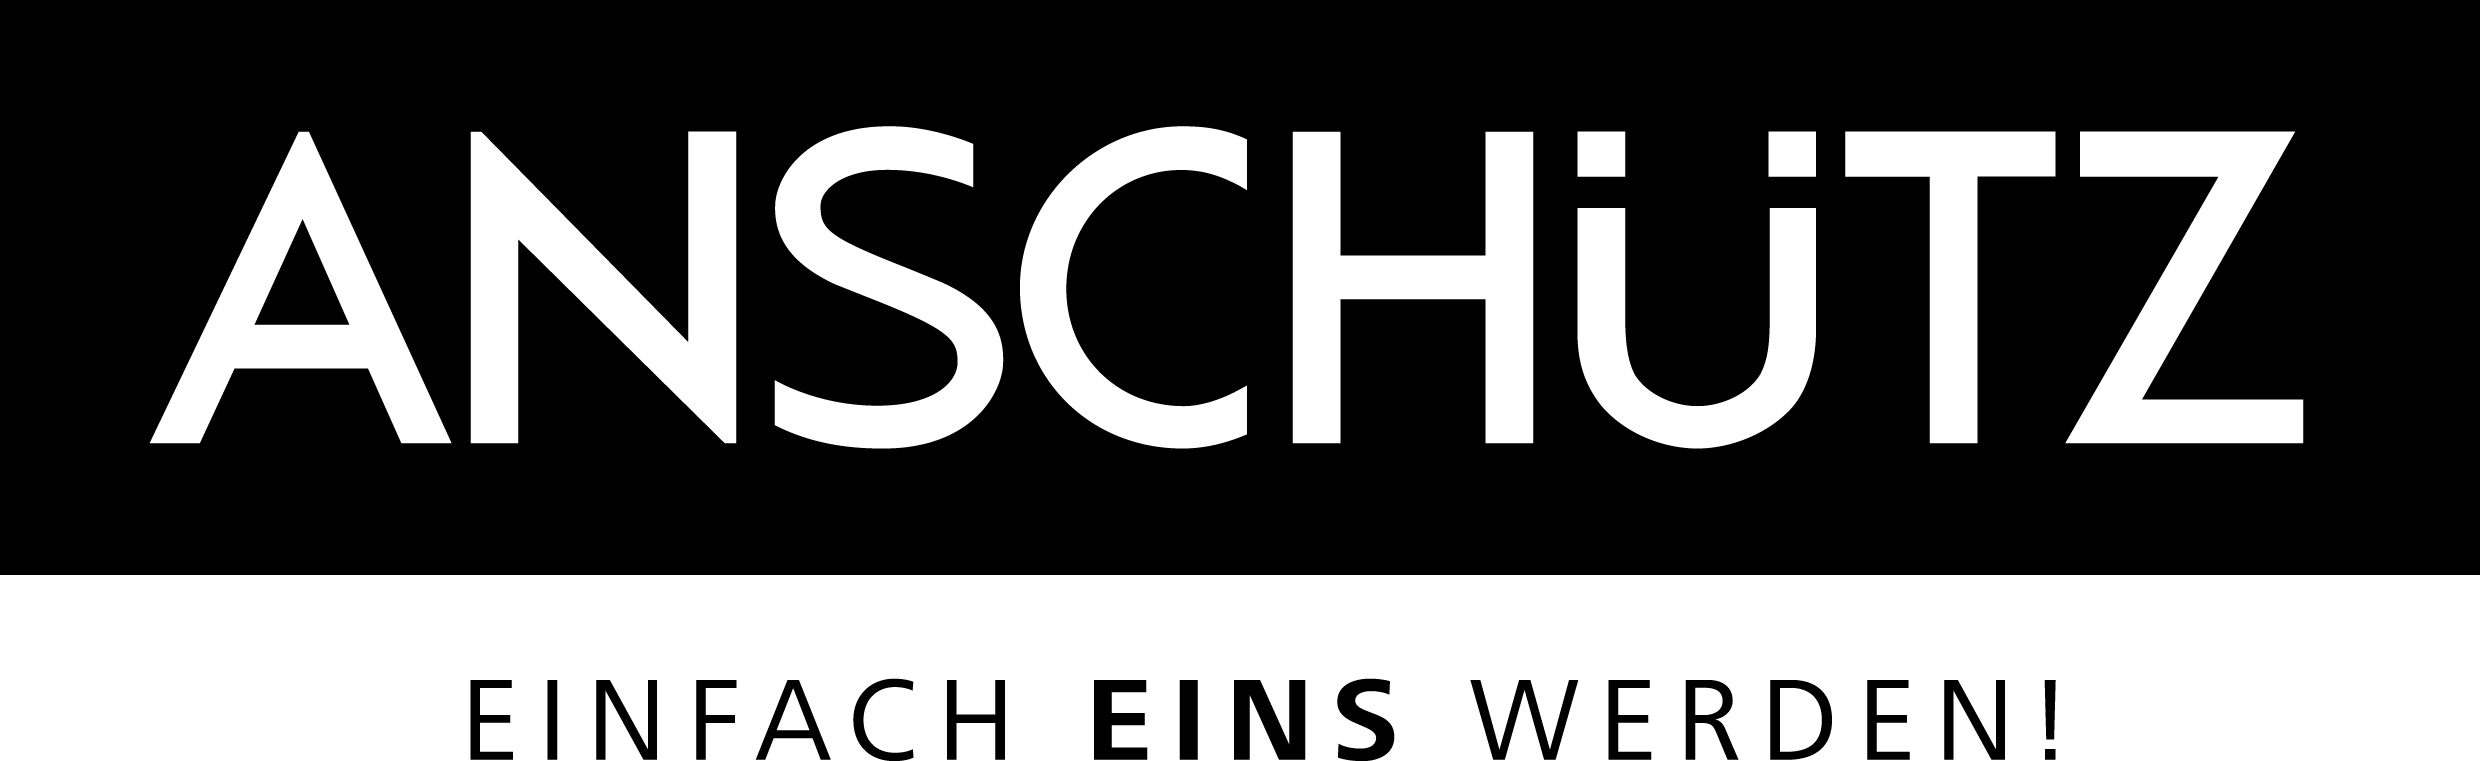 Anschutz Logo - J.G. ANSCHÜTZ GmbH & Co. KG - Logo Downloads